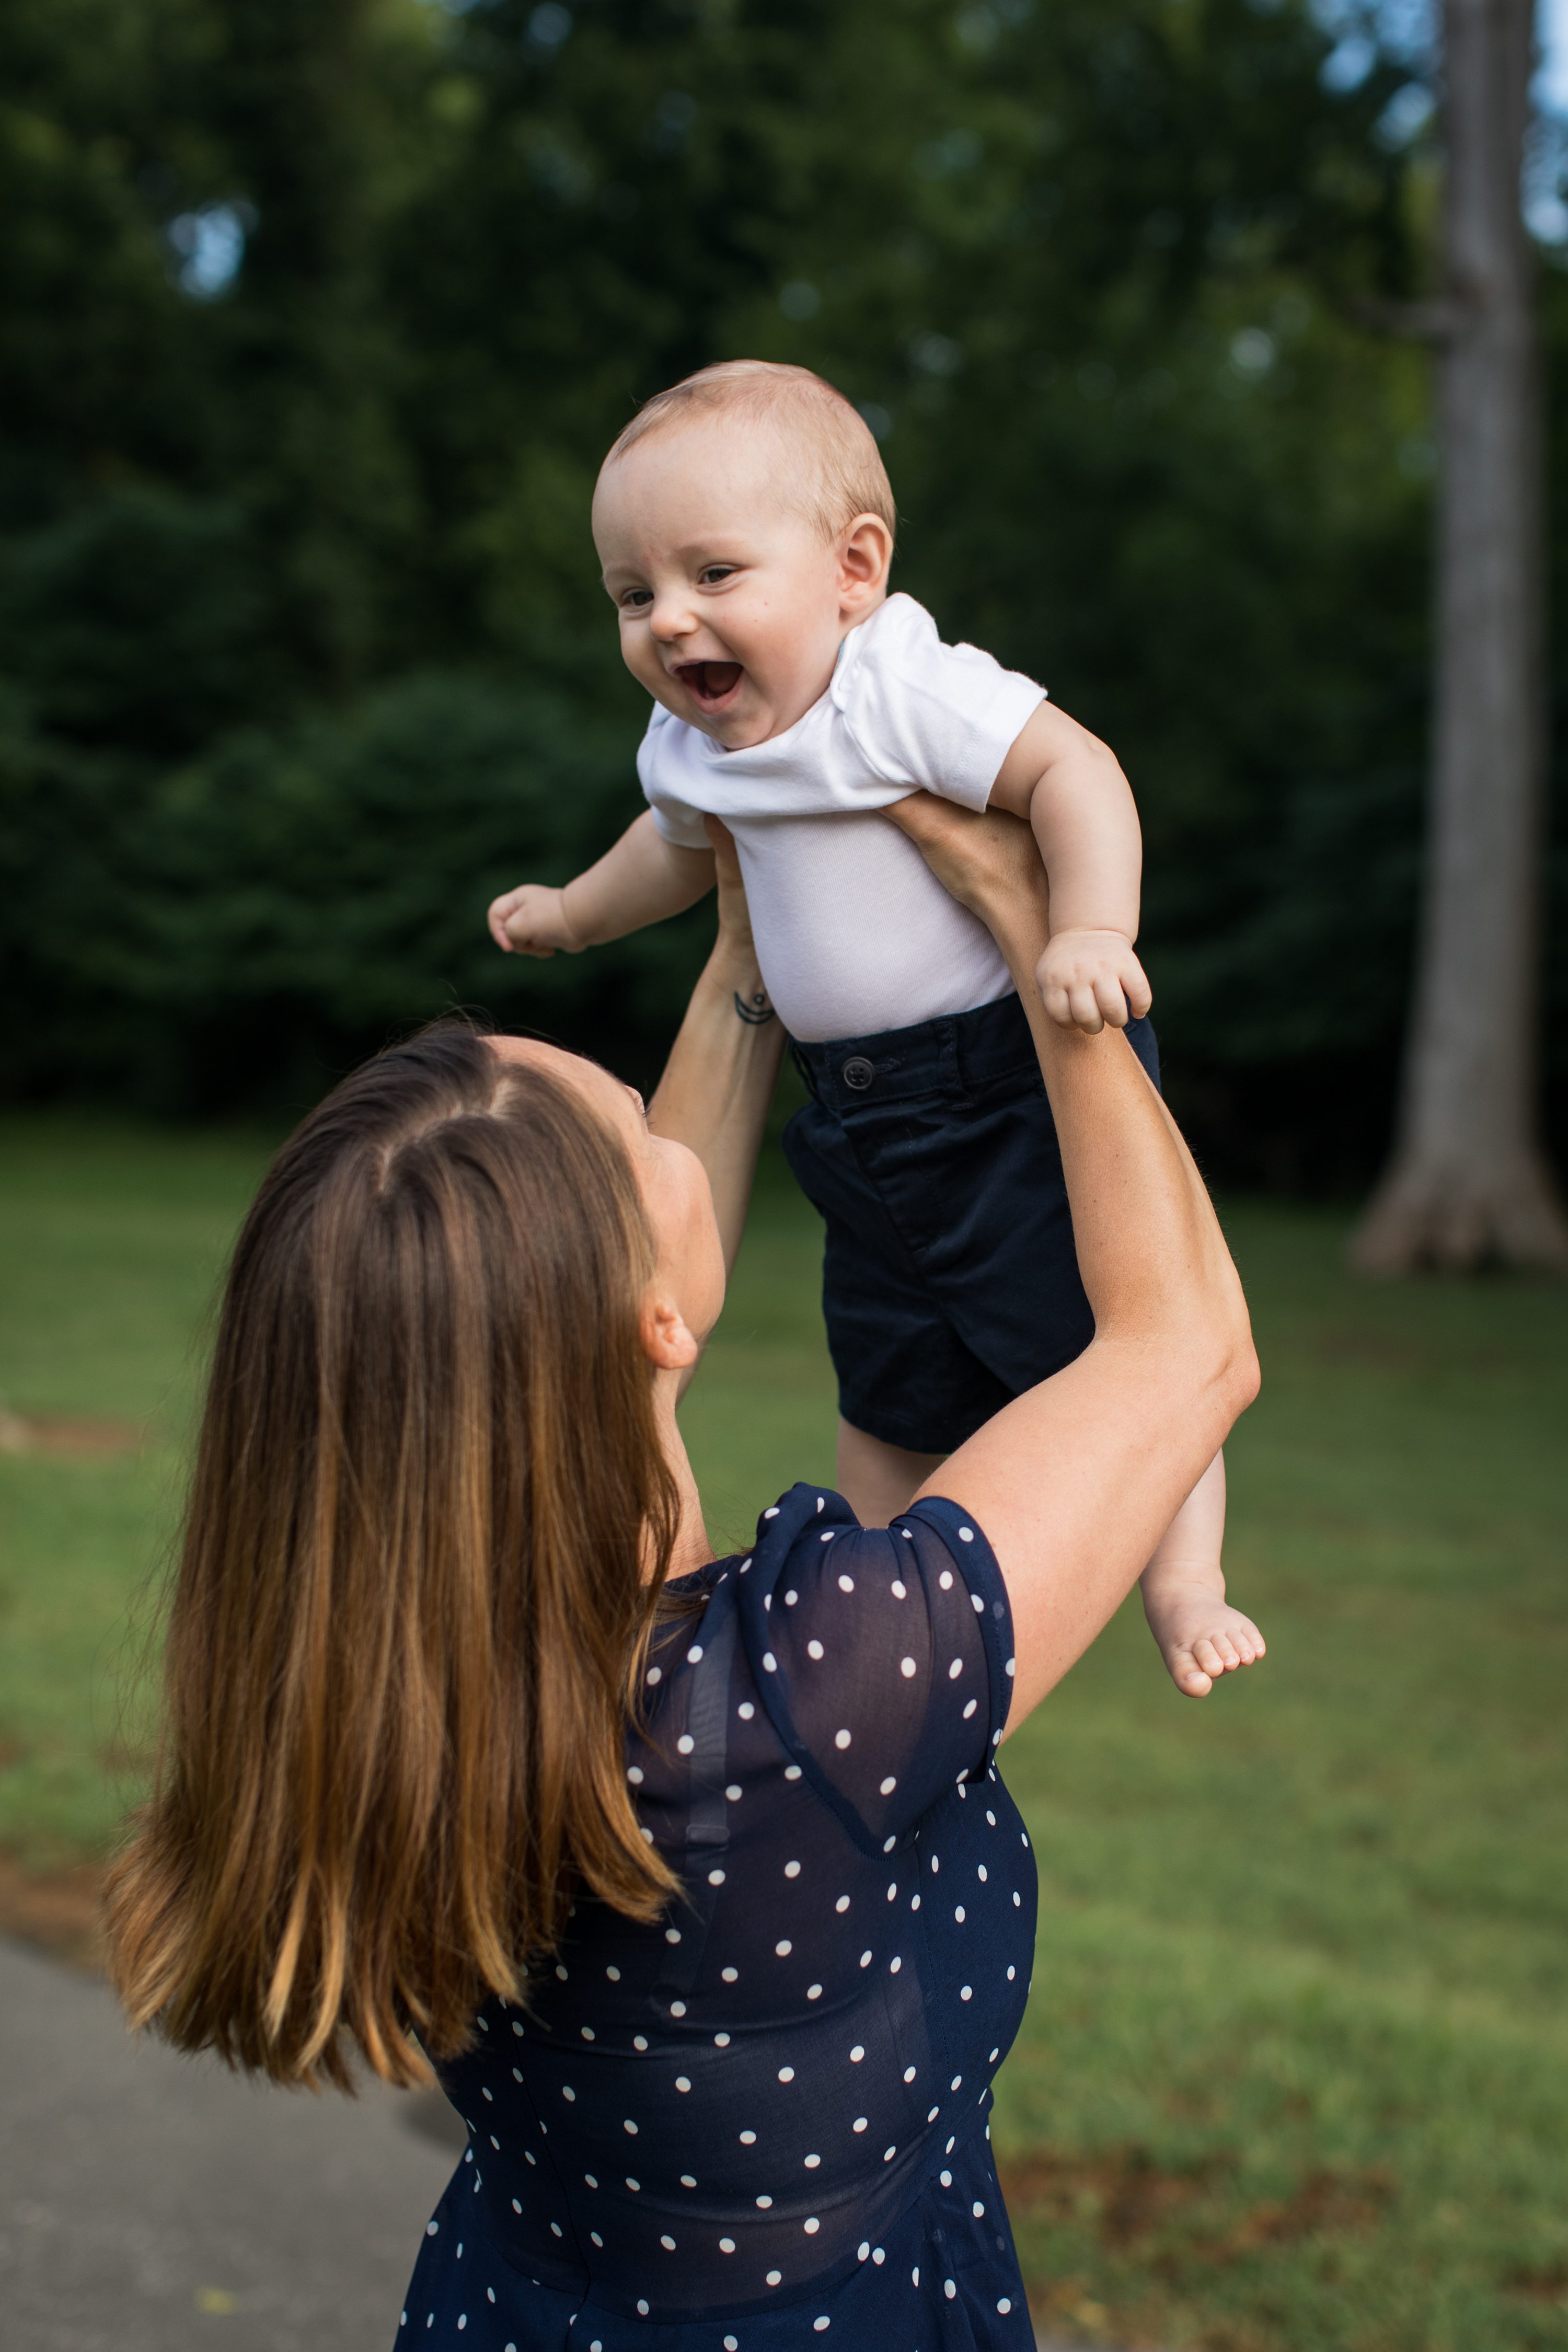 gene stroud rose garden park,Baby Photography,mom lifting smiling baby,mom lifting baby